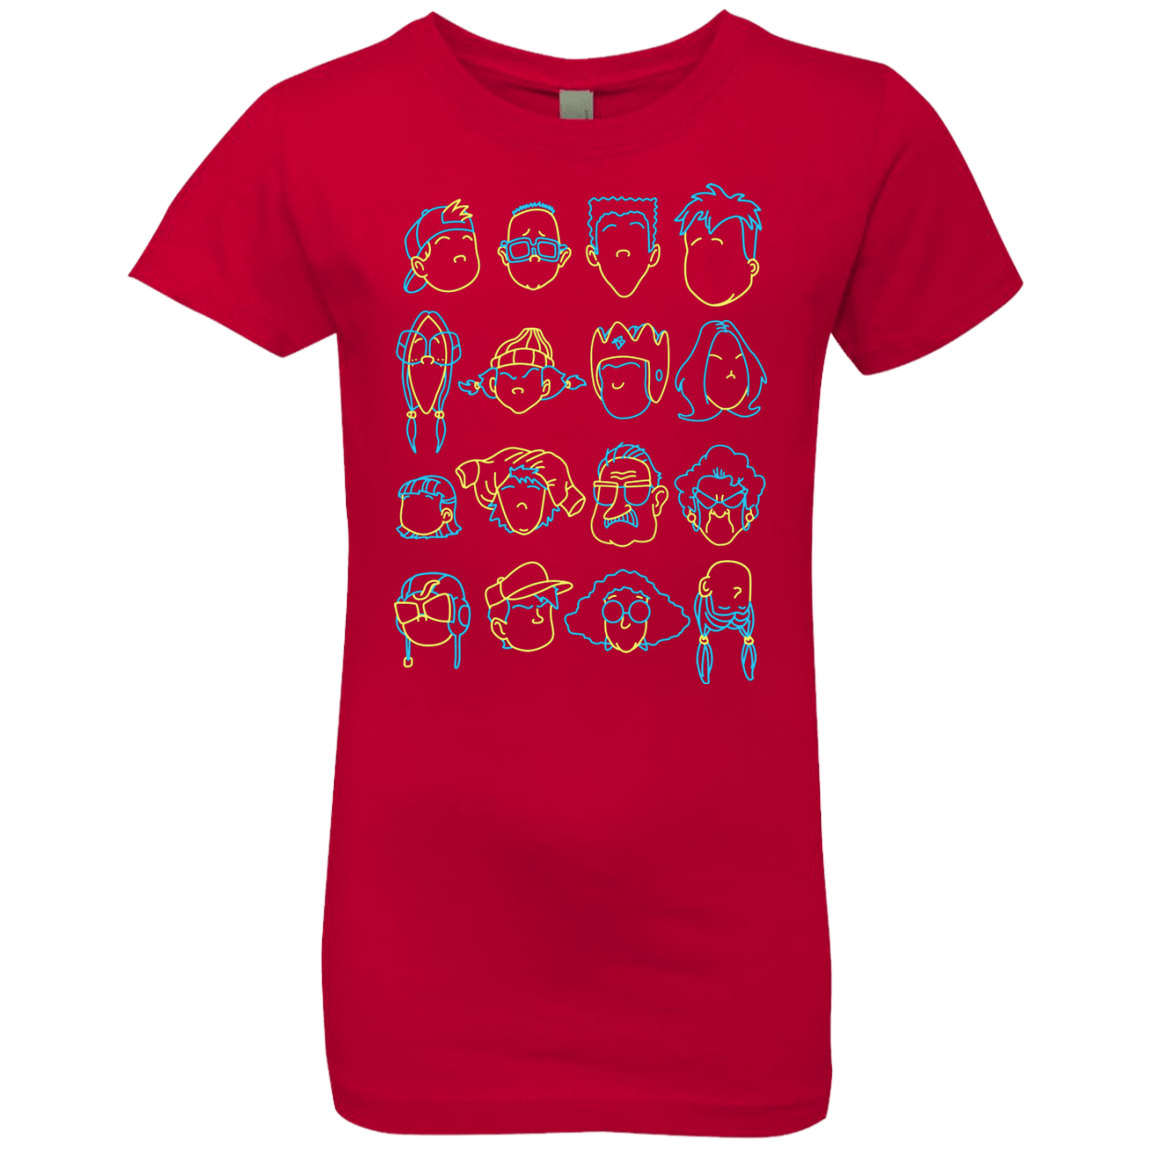 RECESS Girls Premium T-Shirt